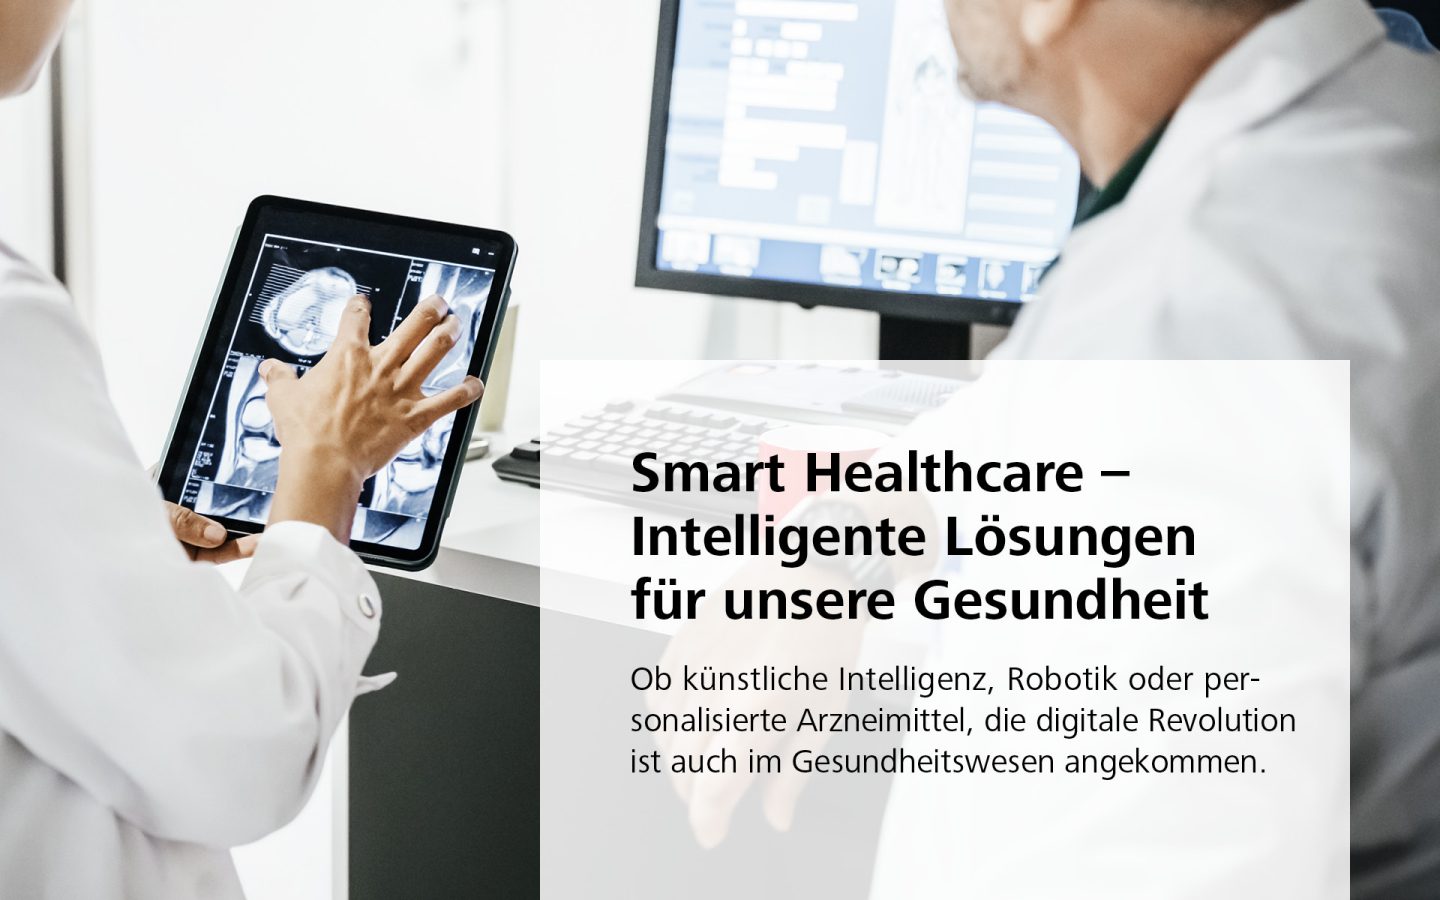 Smart Healthcare – Intelligente Lösungen für unsere Gesundheit